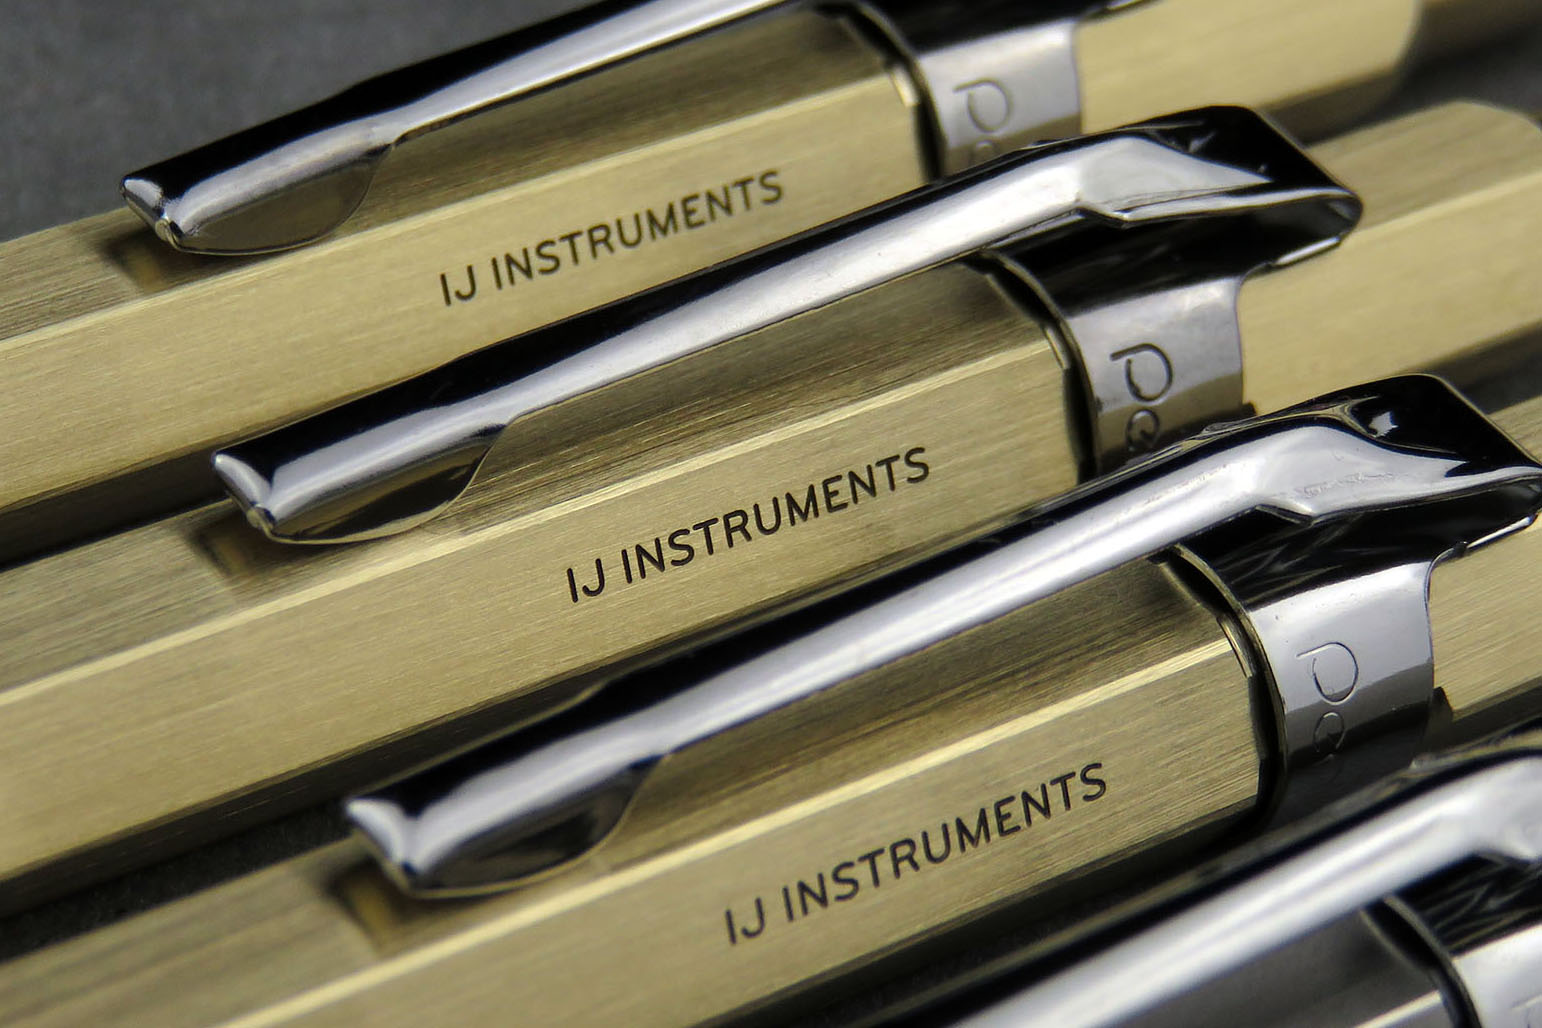 15500円 寄せ品 Ij instruments pg5 type pencil ステンレス 筆記具